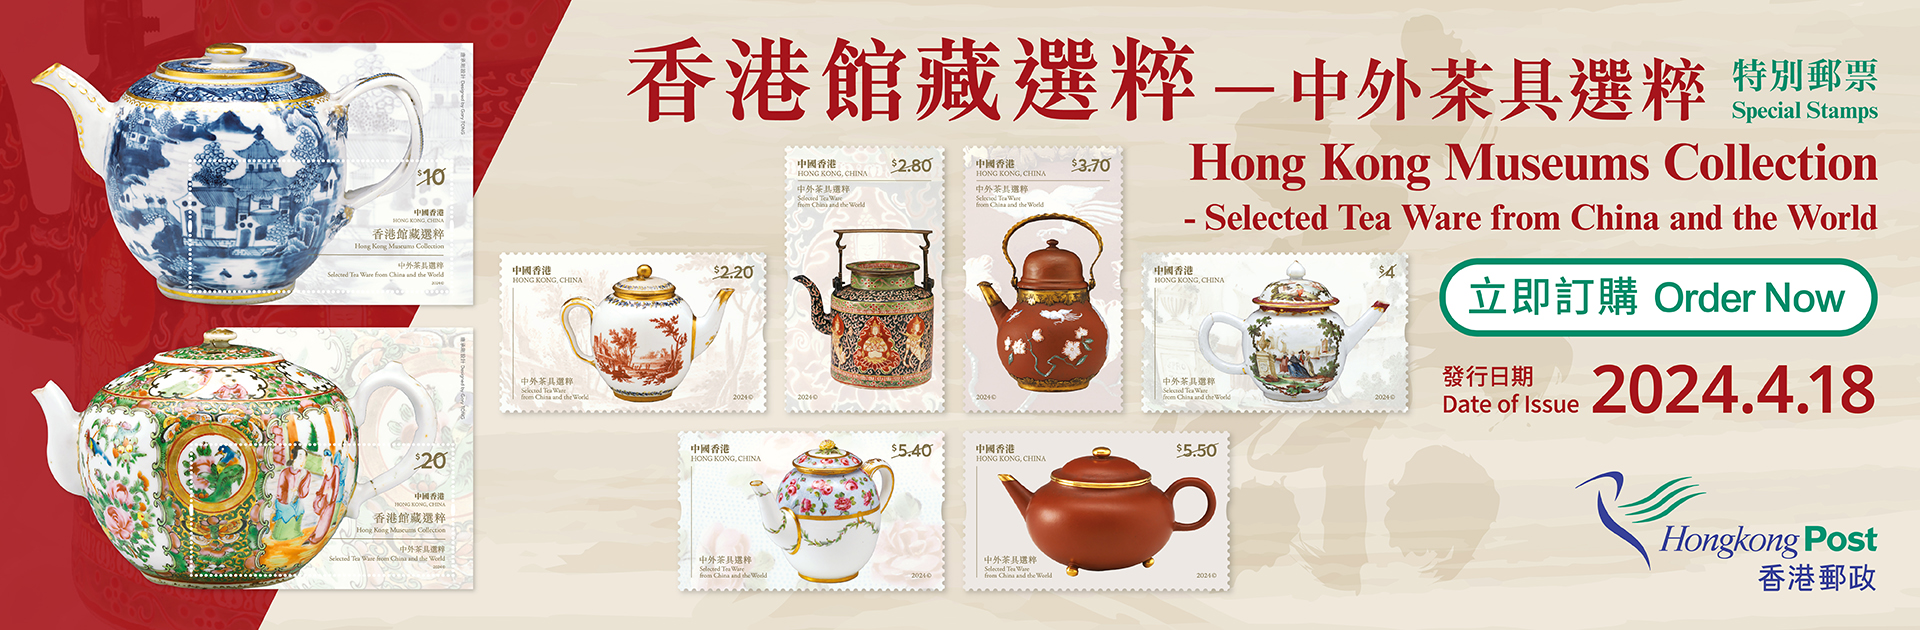 邮品订购服务 - 「香港馆藏选粹 — 中外茶具选粹」